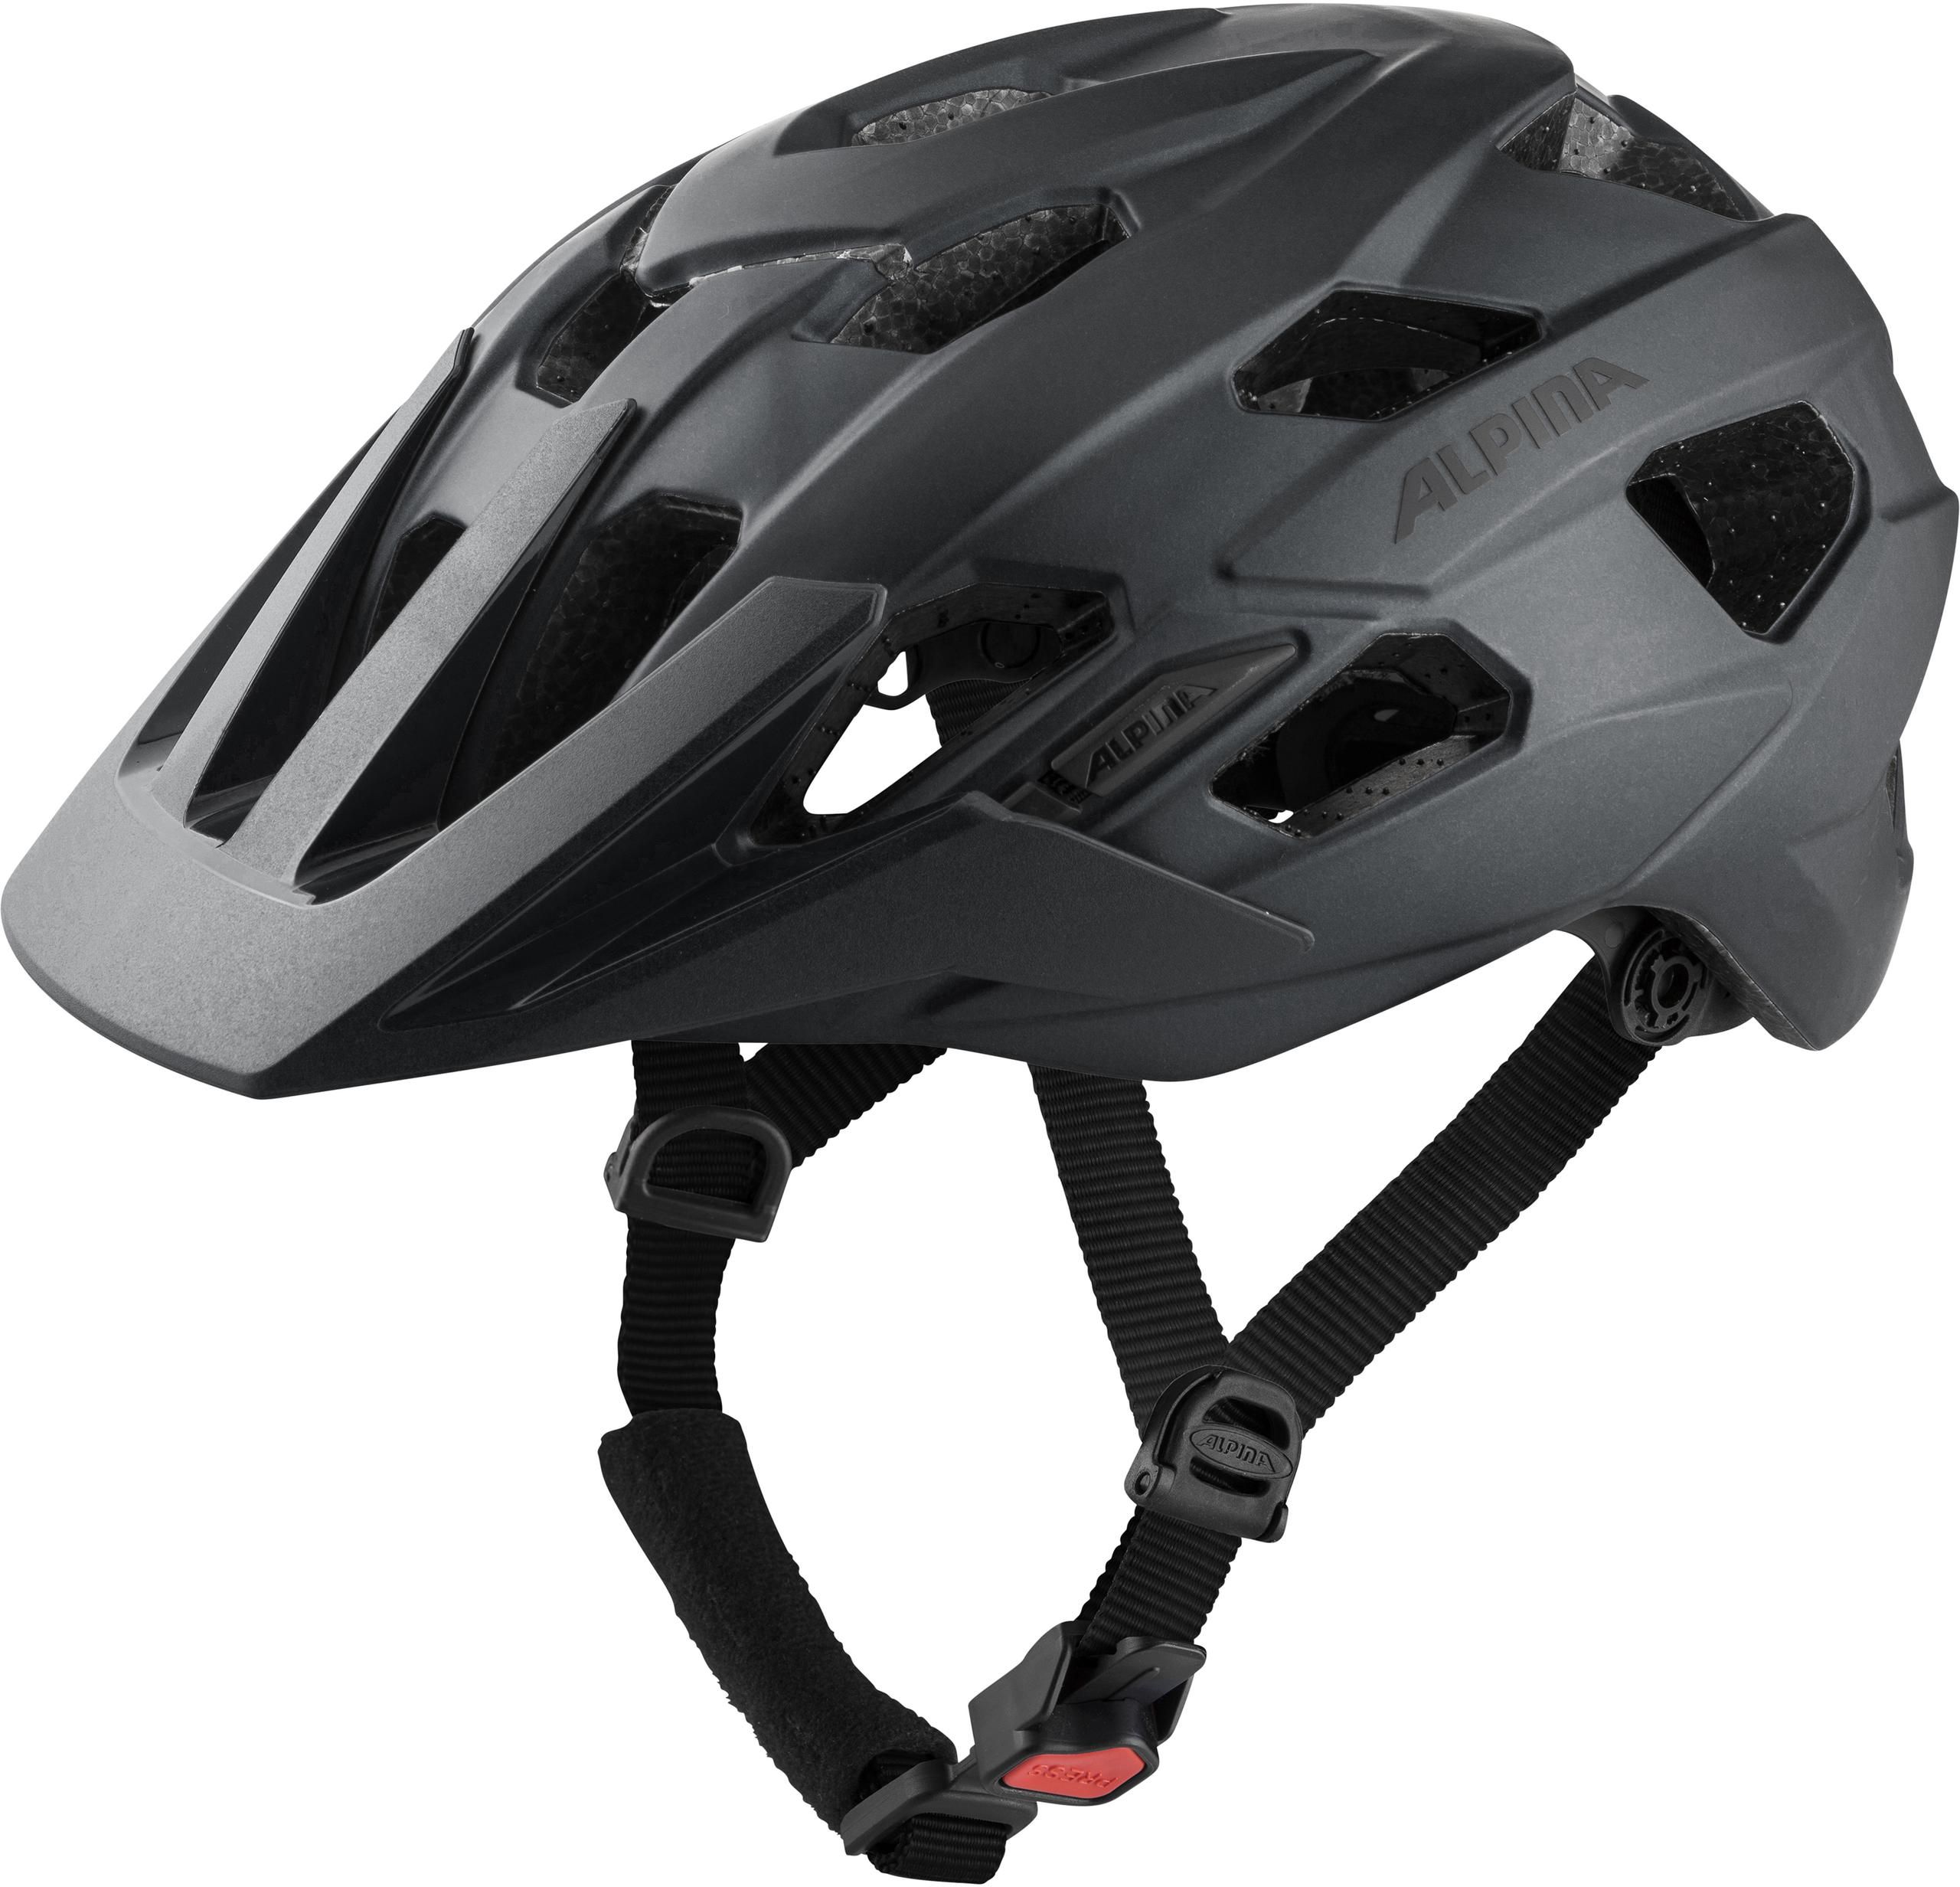 Größe 57-61 cm GHOST Urban Helmet in grau/schwarz Fahrradhelm 